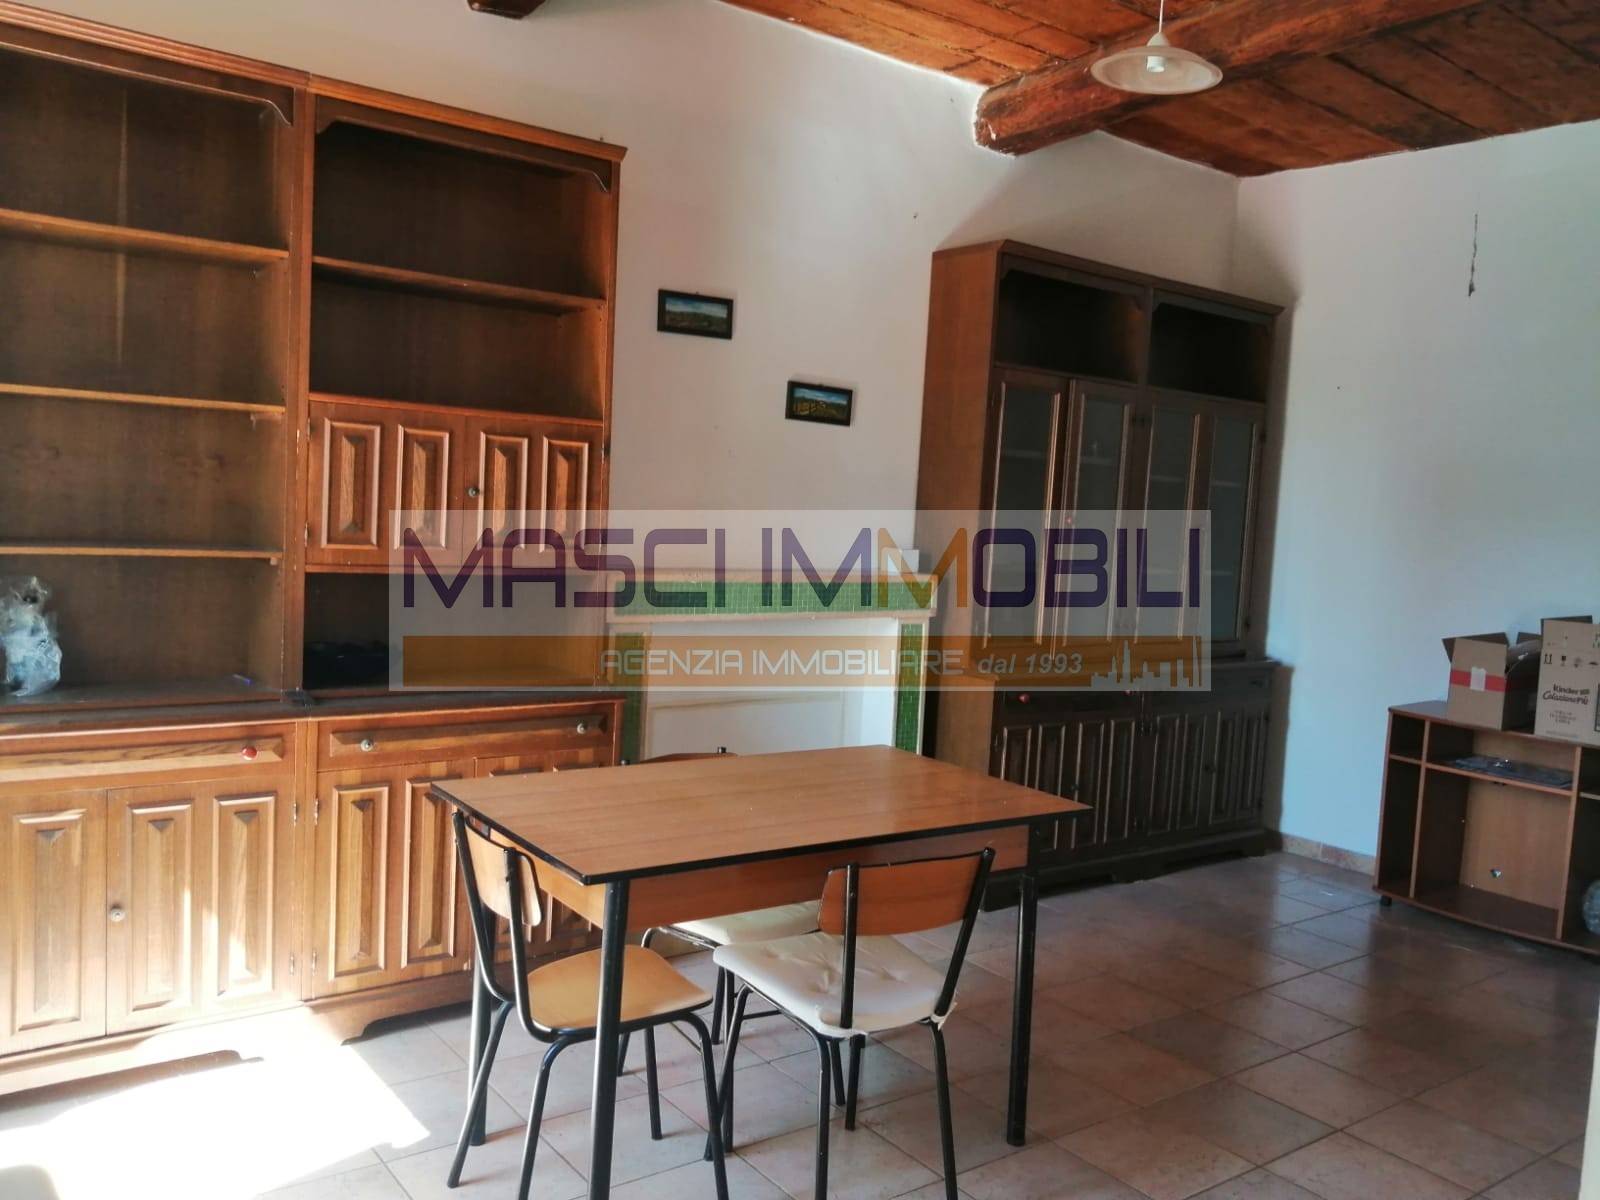 Appartamento in vendita a Civitella San Paolo, 2 locali, prezzo € 22.000 | CambioCasa.it